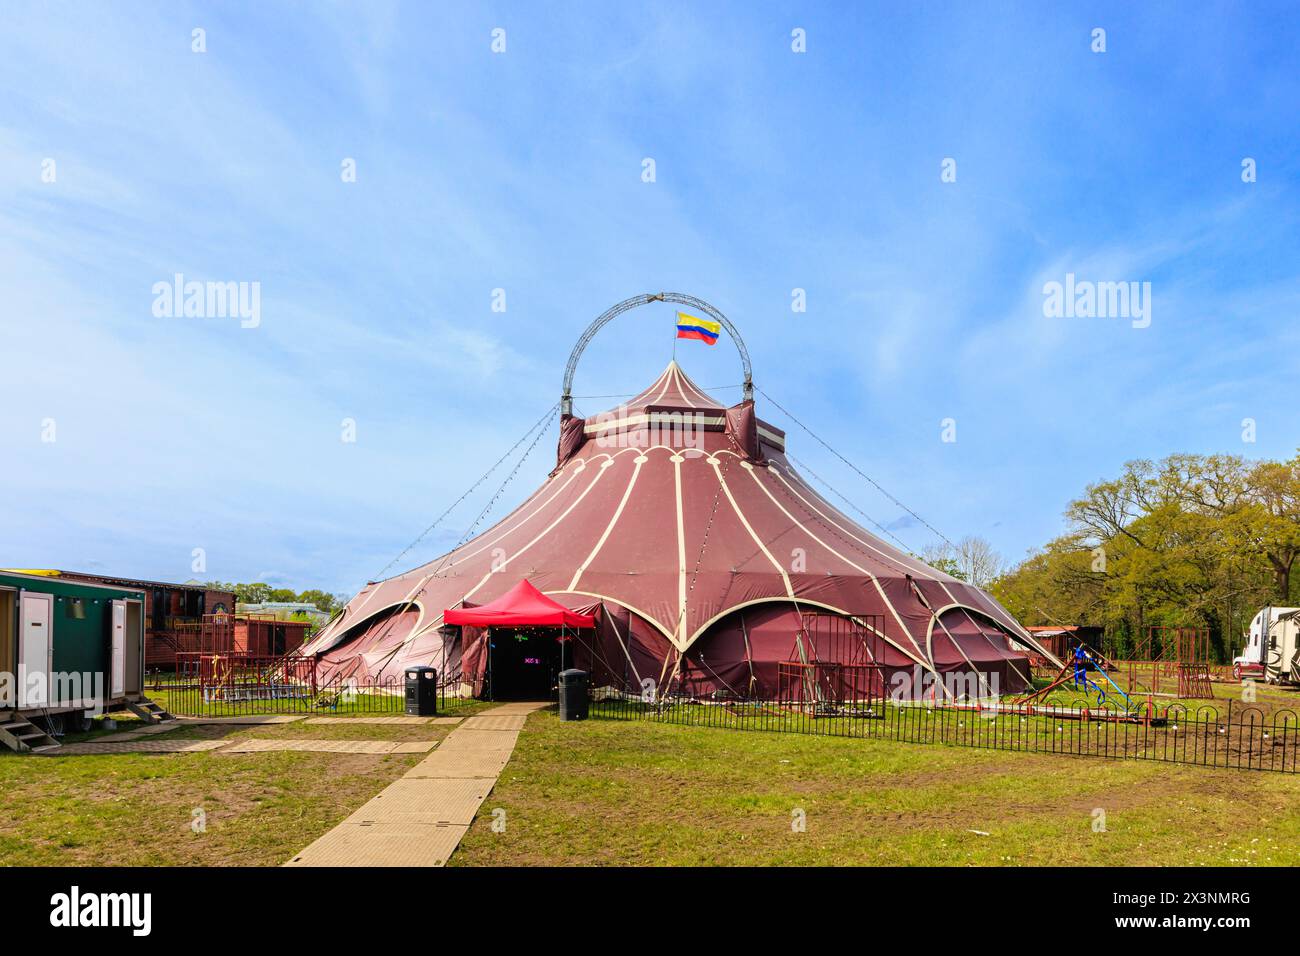 Ein traditionelles Circus Zyair großes Zelt in Guildford, Surrey, Südosten Englands Stockfoto